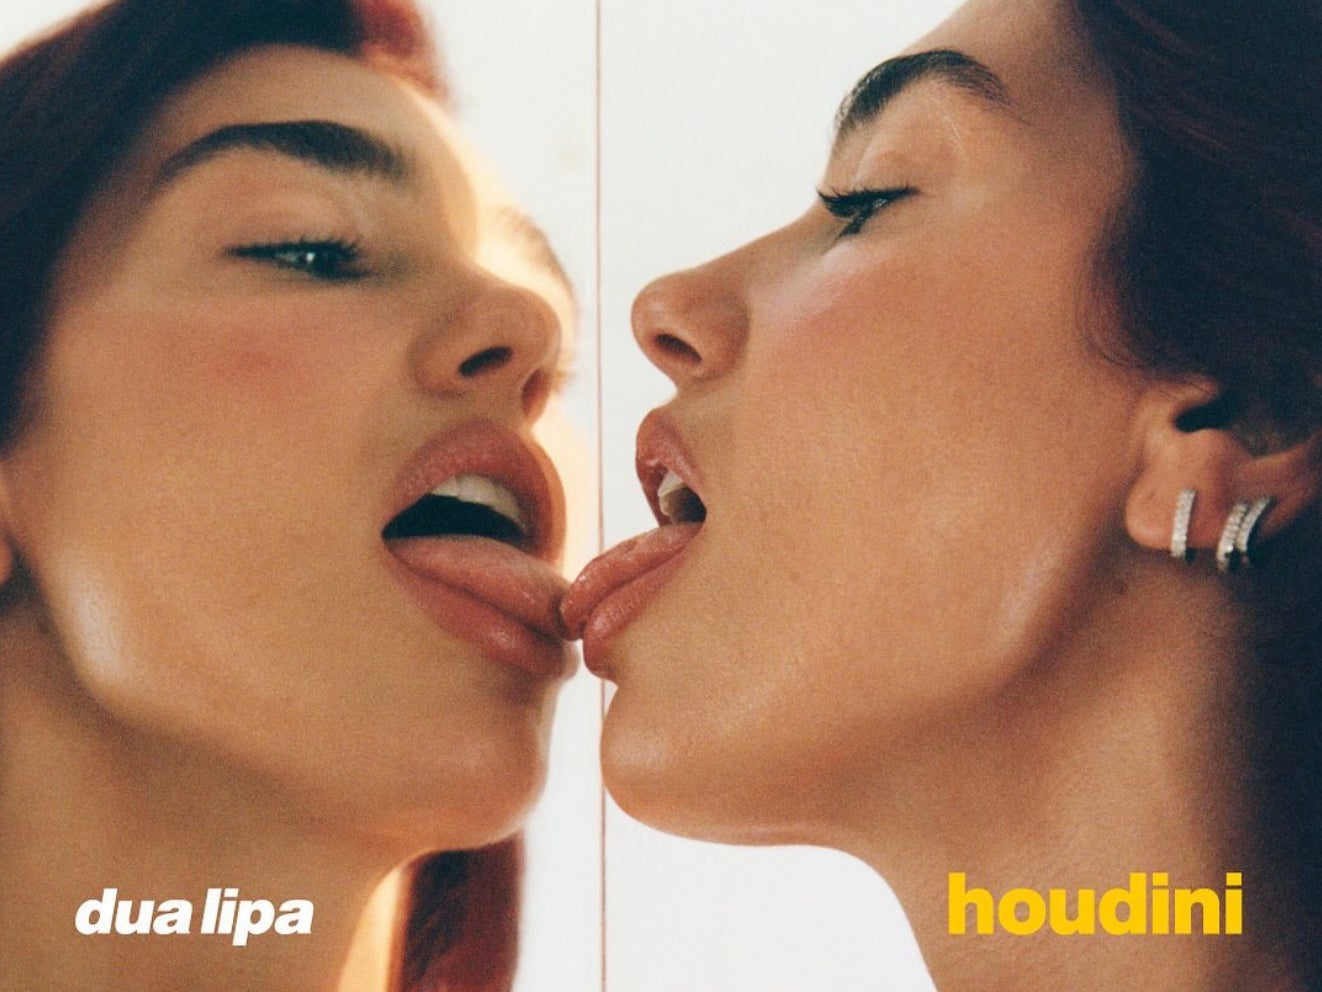 Dua Lipa cover art for ‘Houdini’